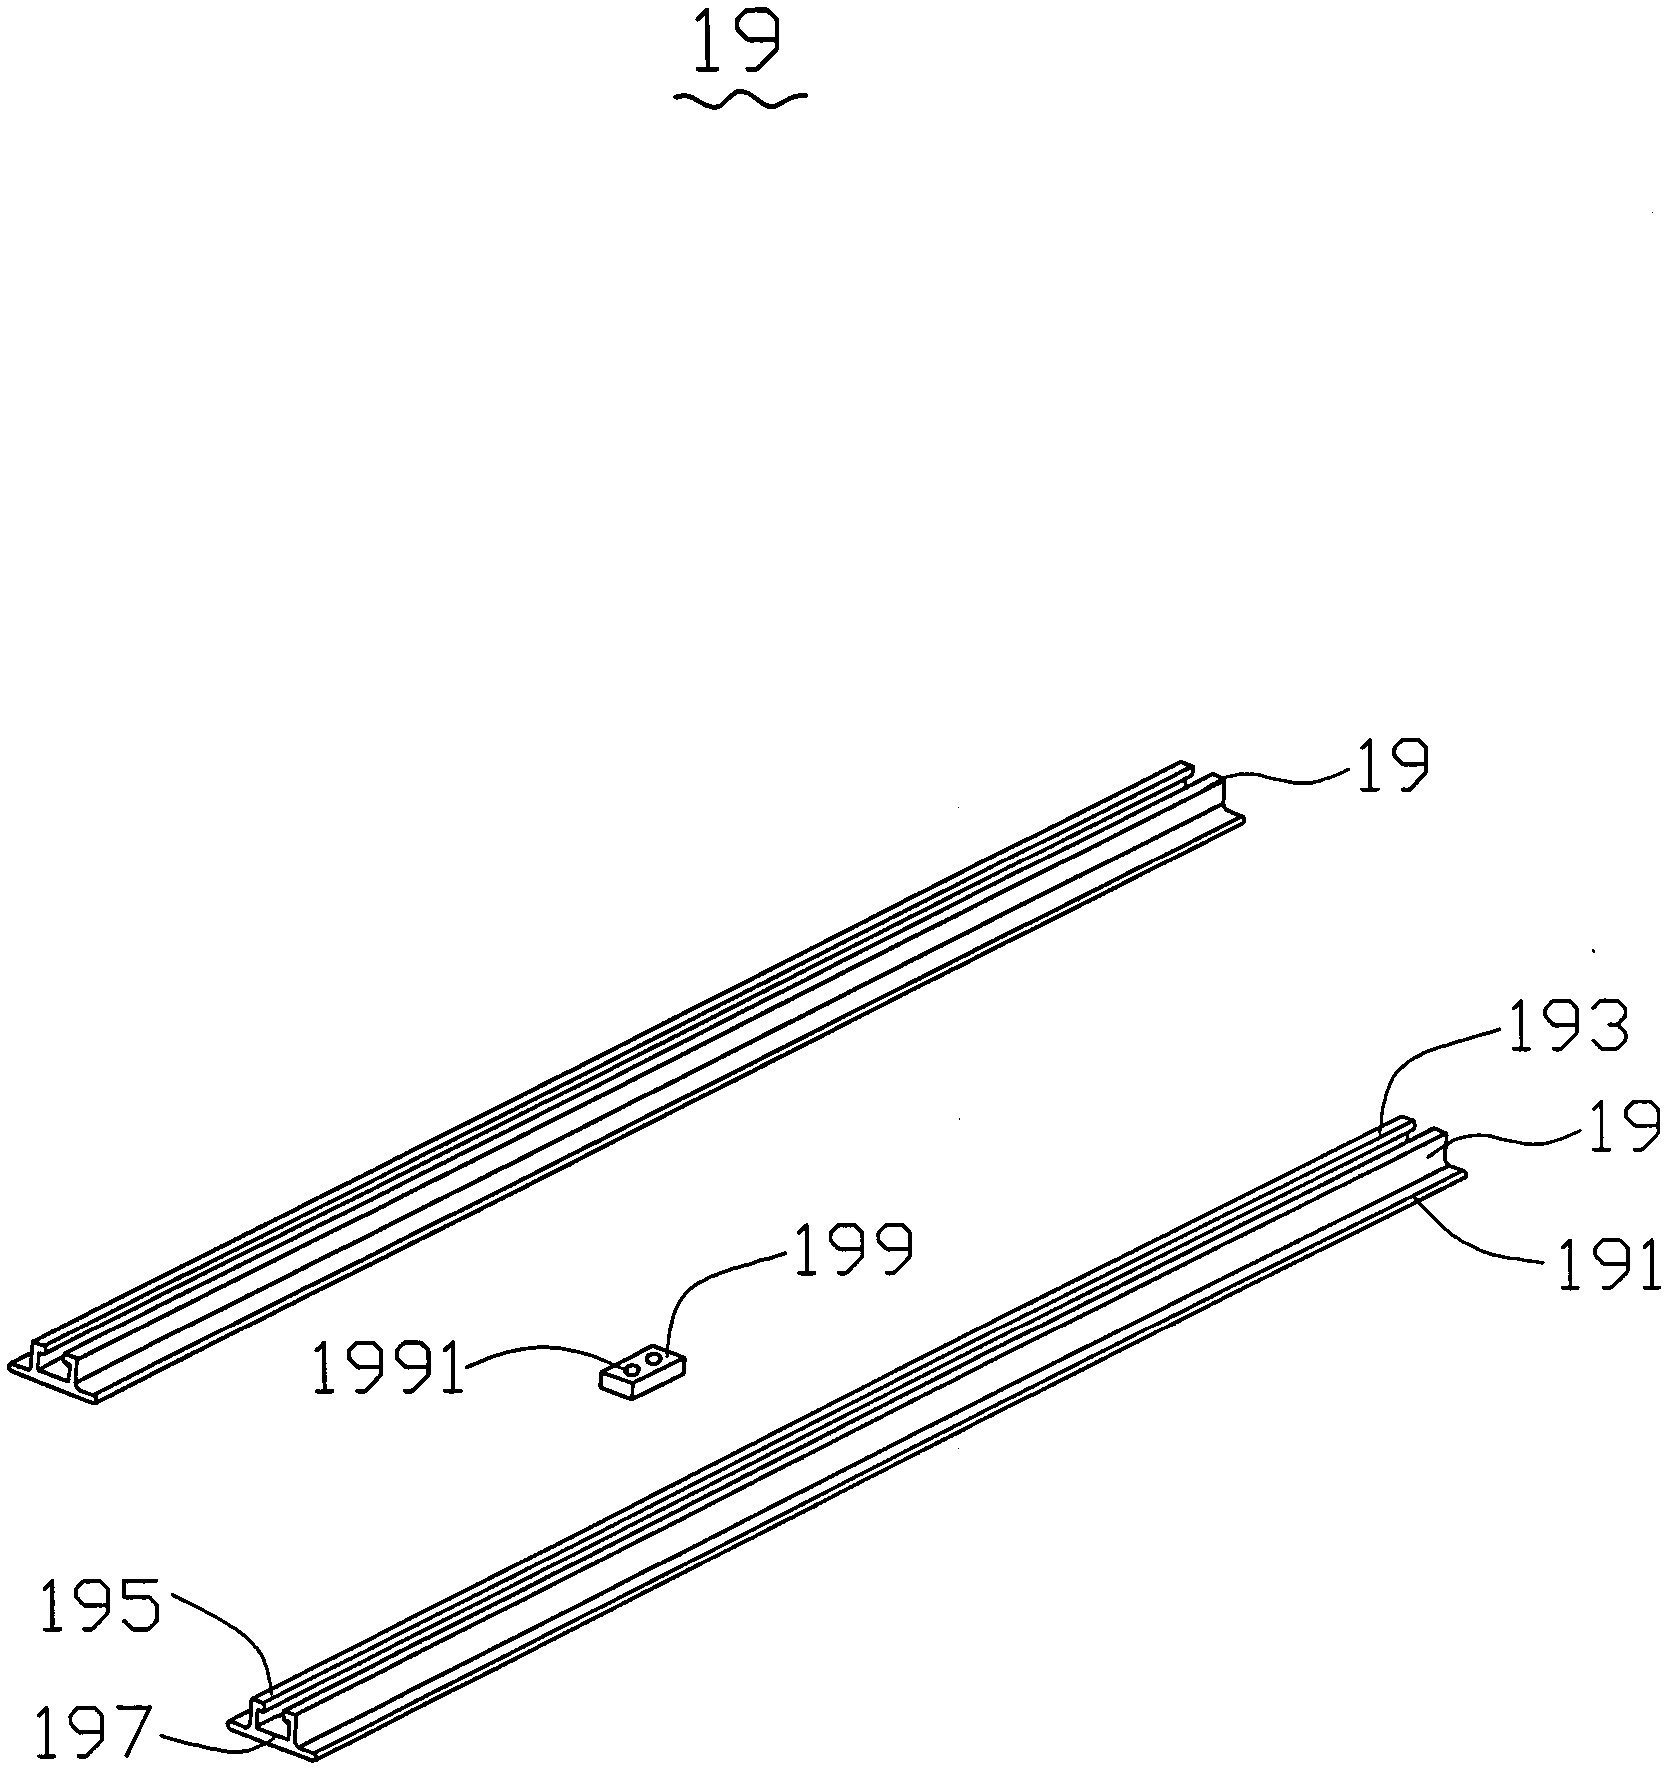 Adjustable light-emitting diode (LED) lamp